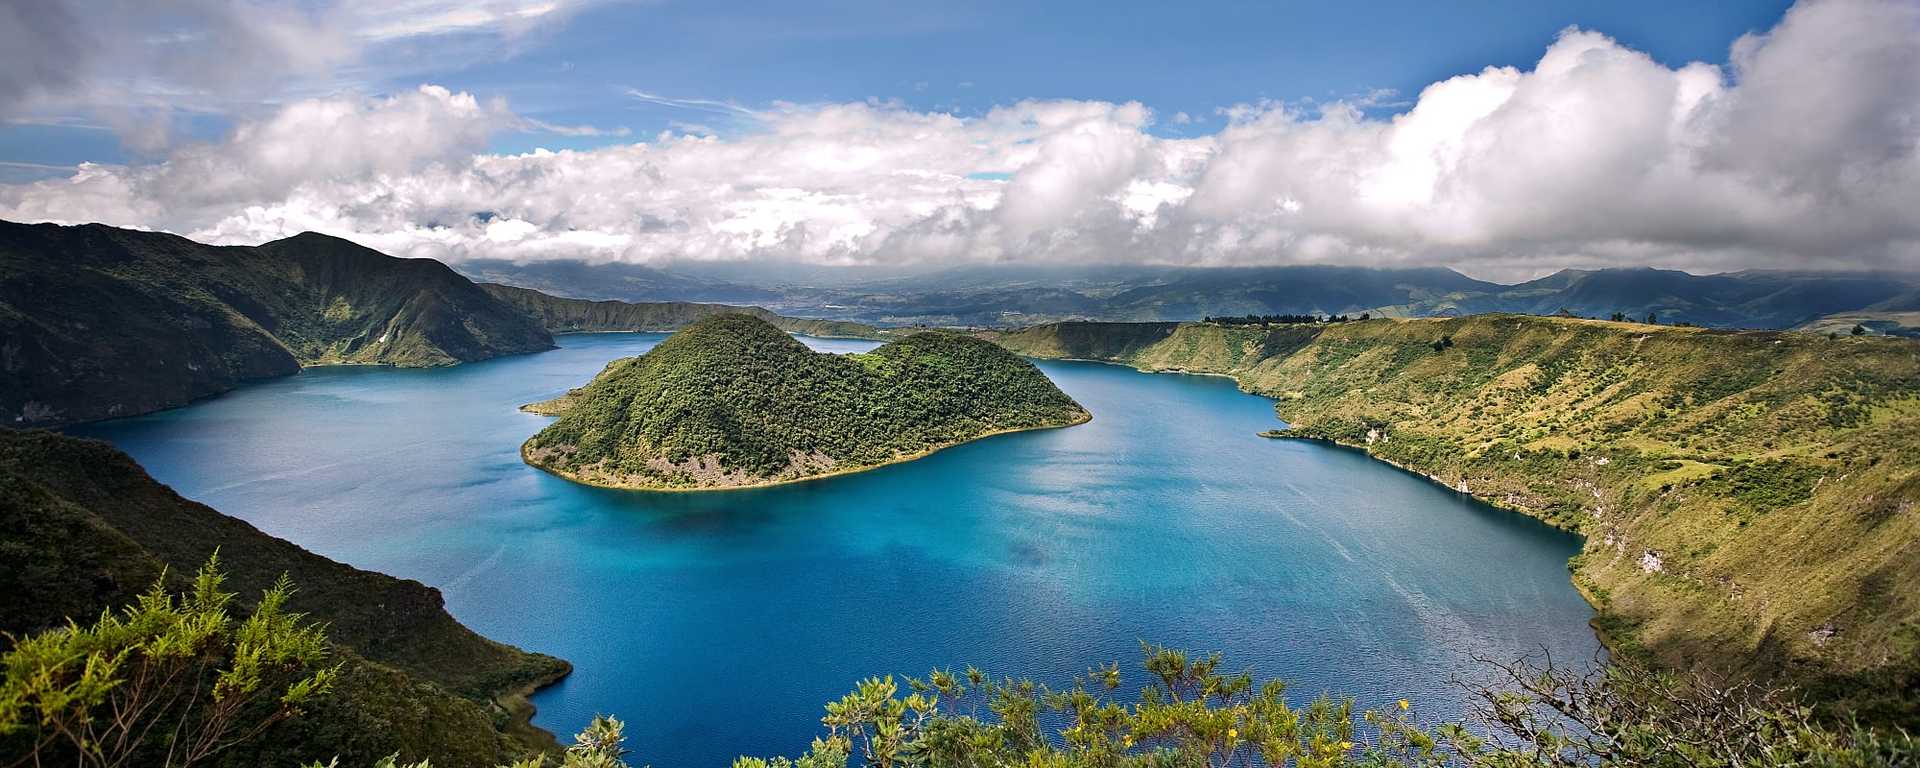 Laguna de Cuicocha in Andean Highlands region of Ecuador.